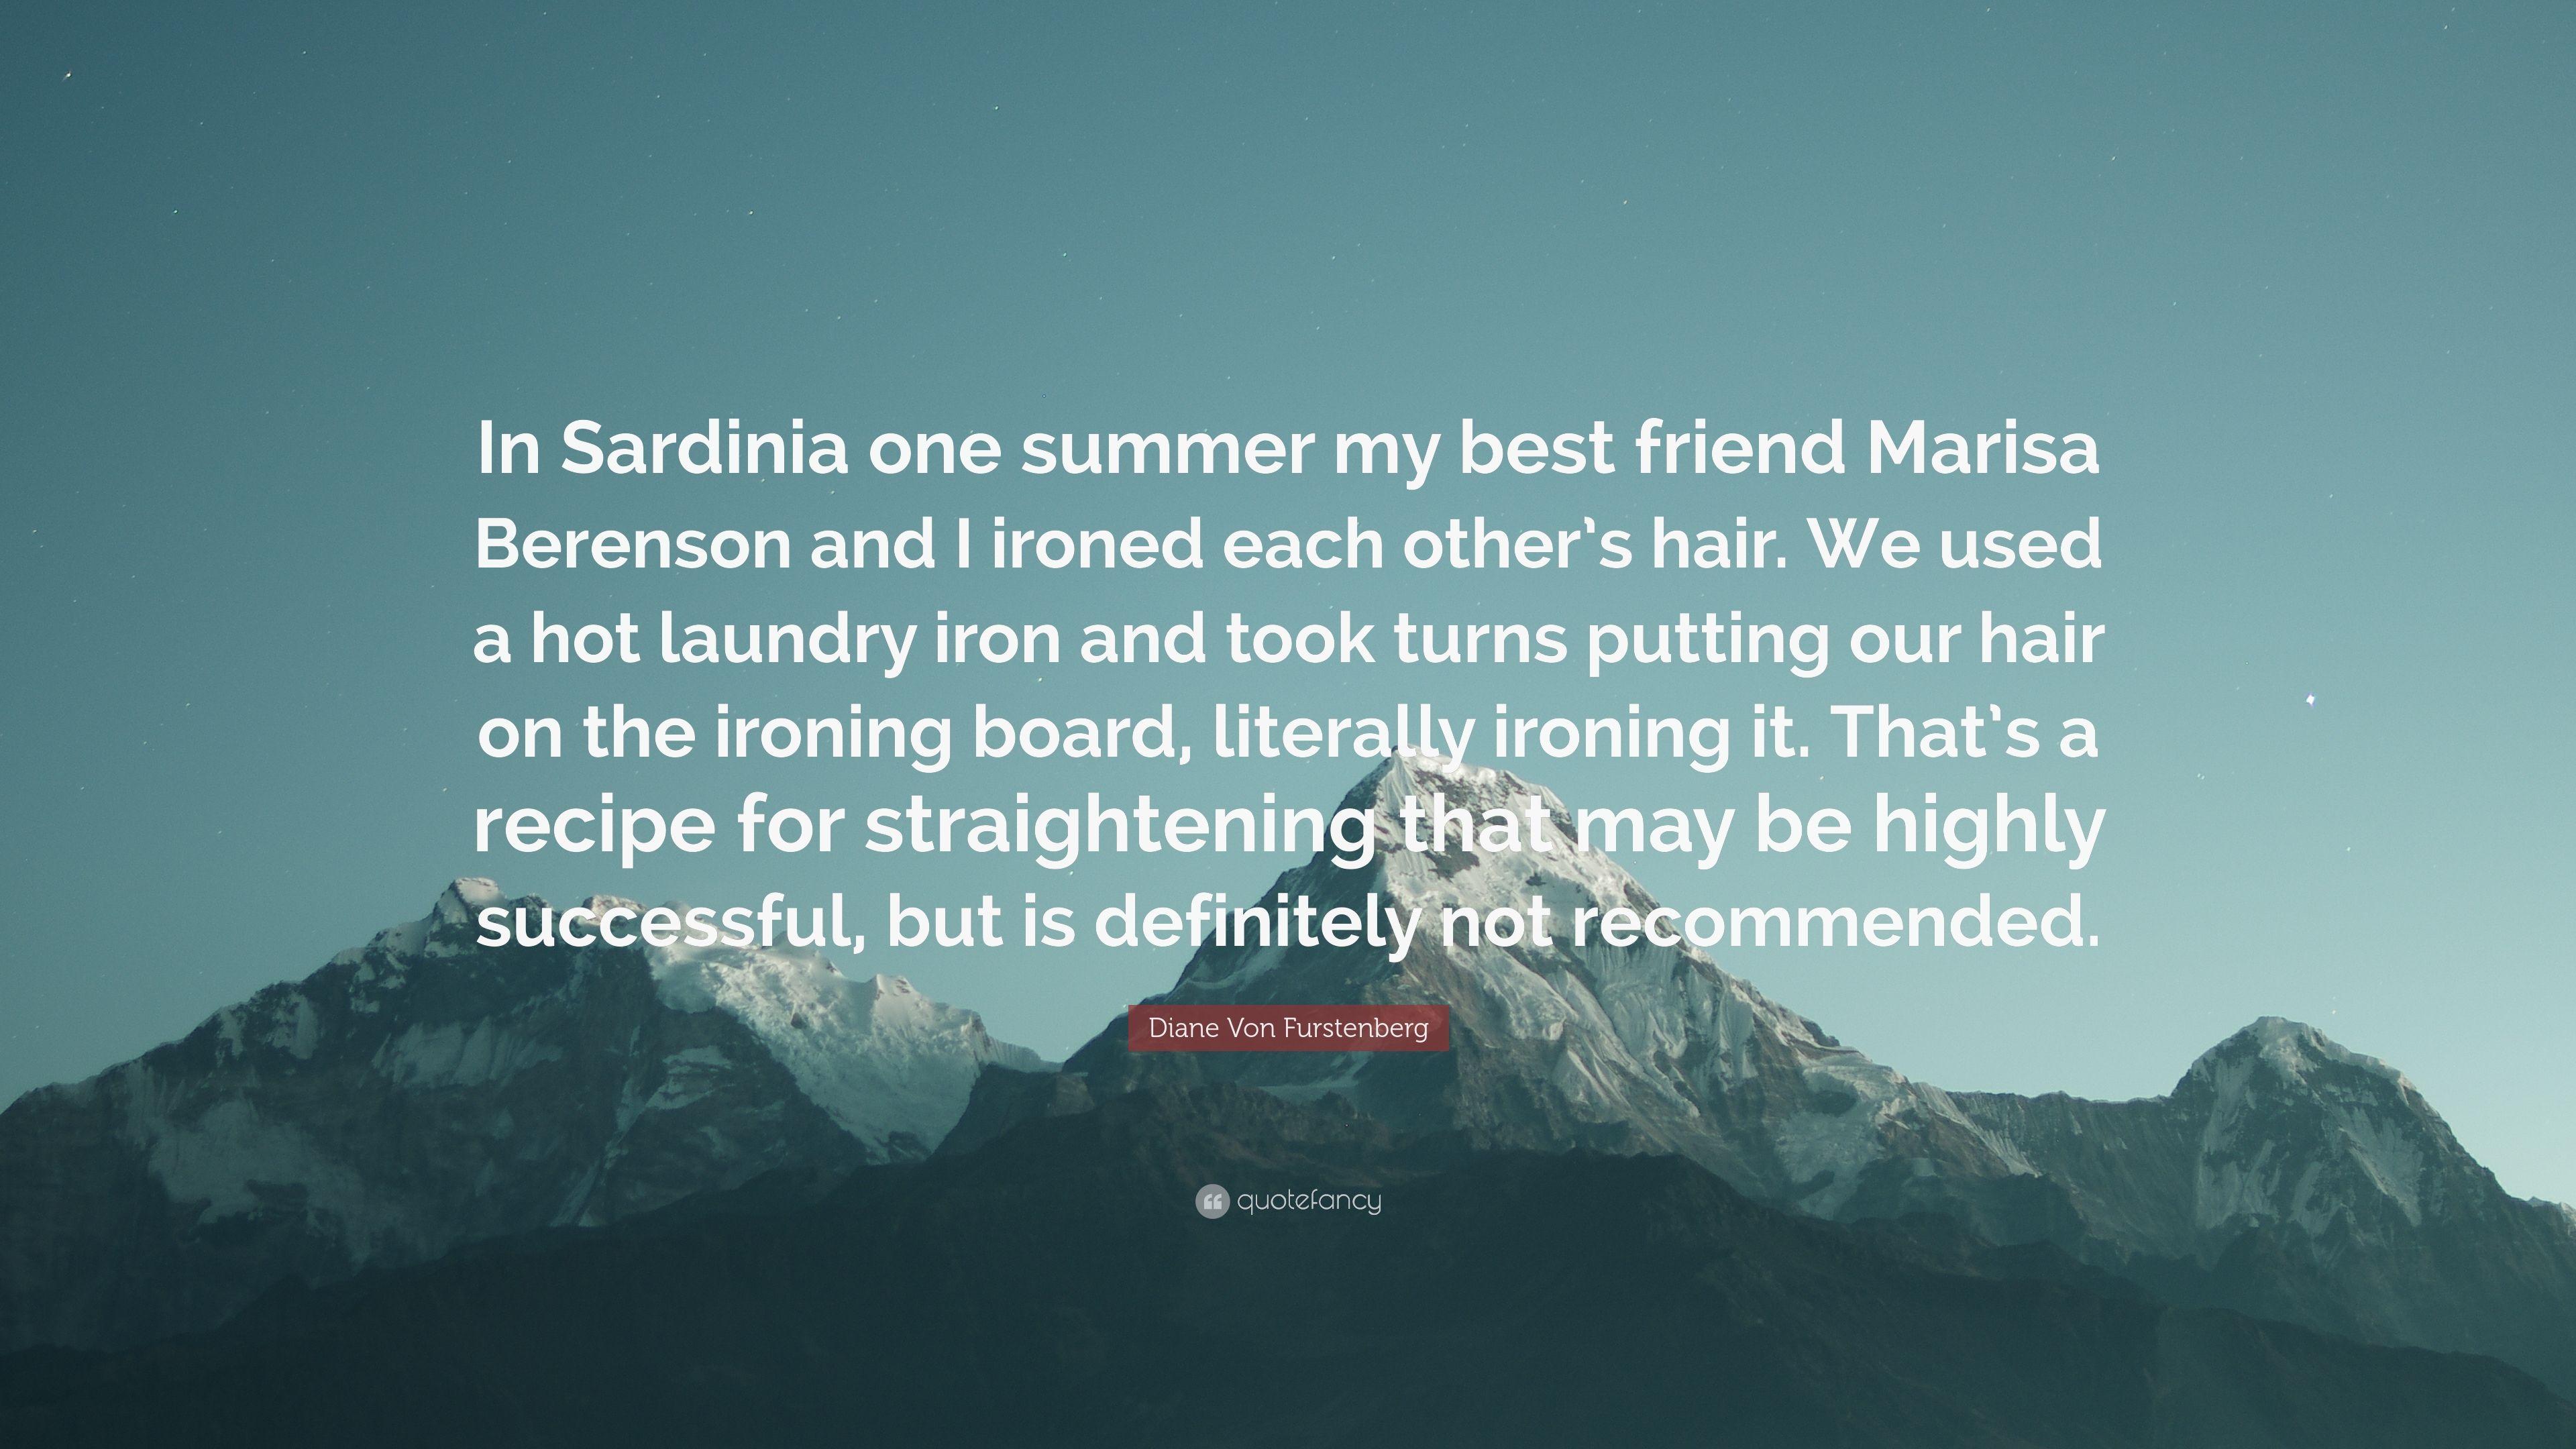 Diane Von Furstenberg Quote: “In Sardinia one summer my best friend